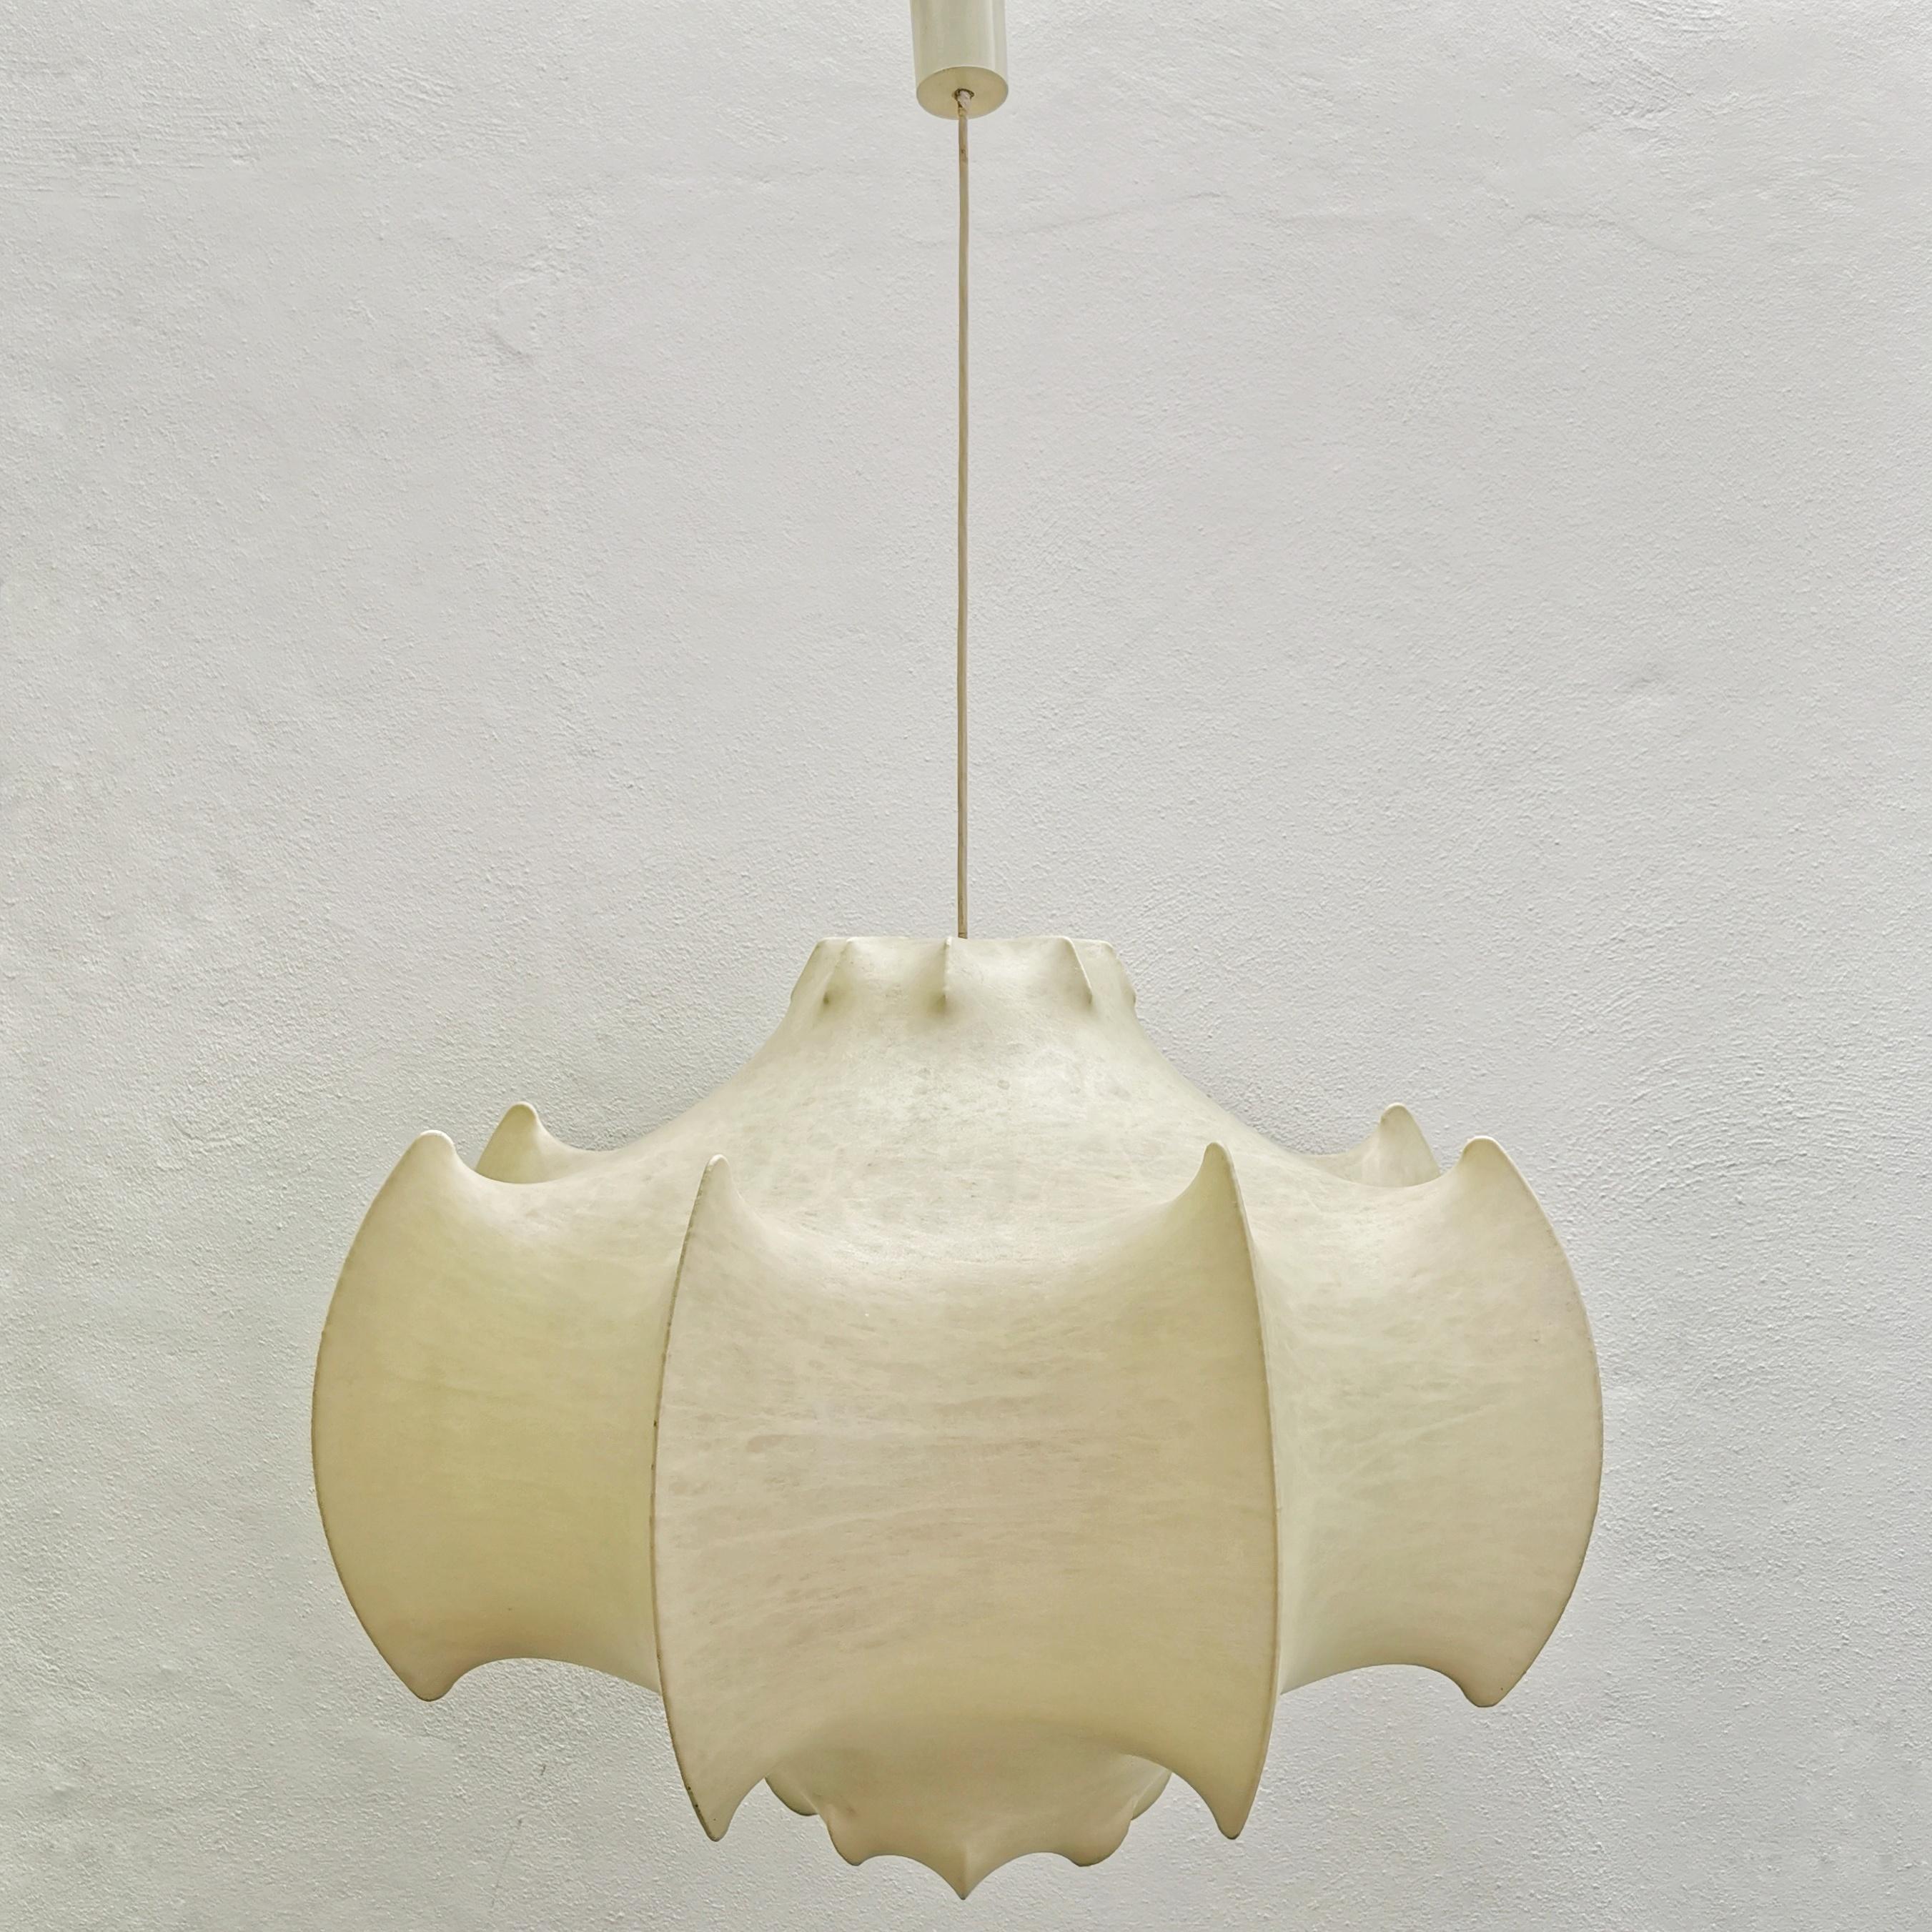 Viscontea è una lampada a sospensione entworfen von Achille Castiglioni und Pier Giacomo Castiglioni im Jahr 1960
E' una lampada a luce diffusa che unisce lusso e innovazione. Die innere Struktur ist aus vernickeltem, schwarzem Aluminium, während